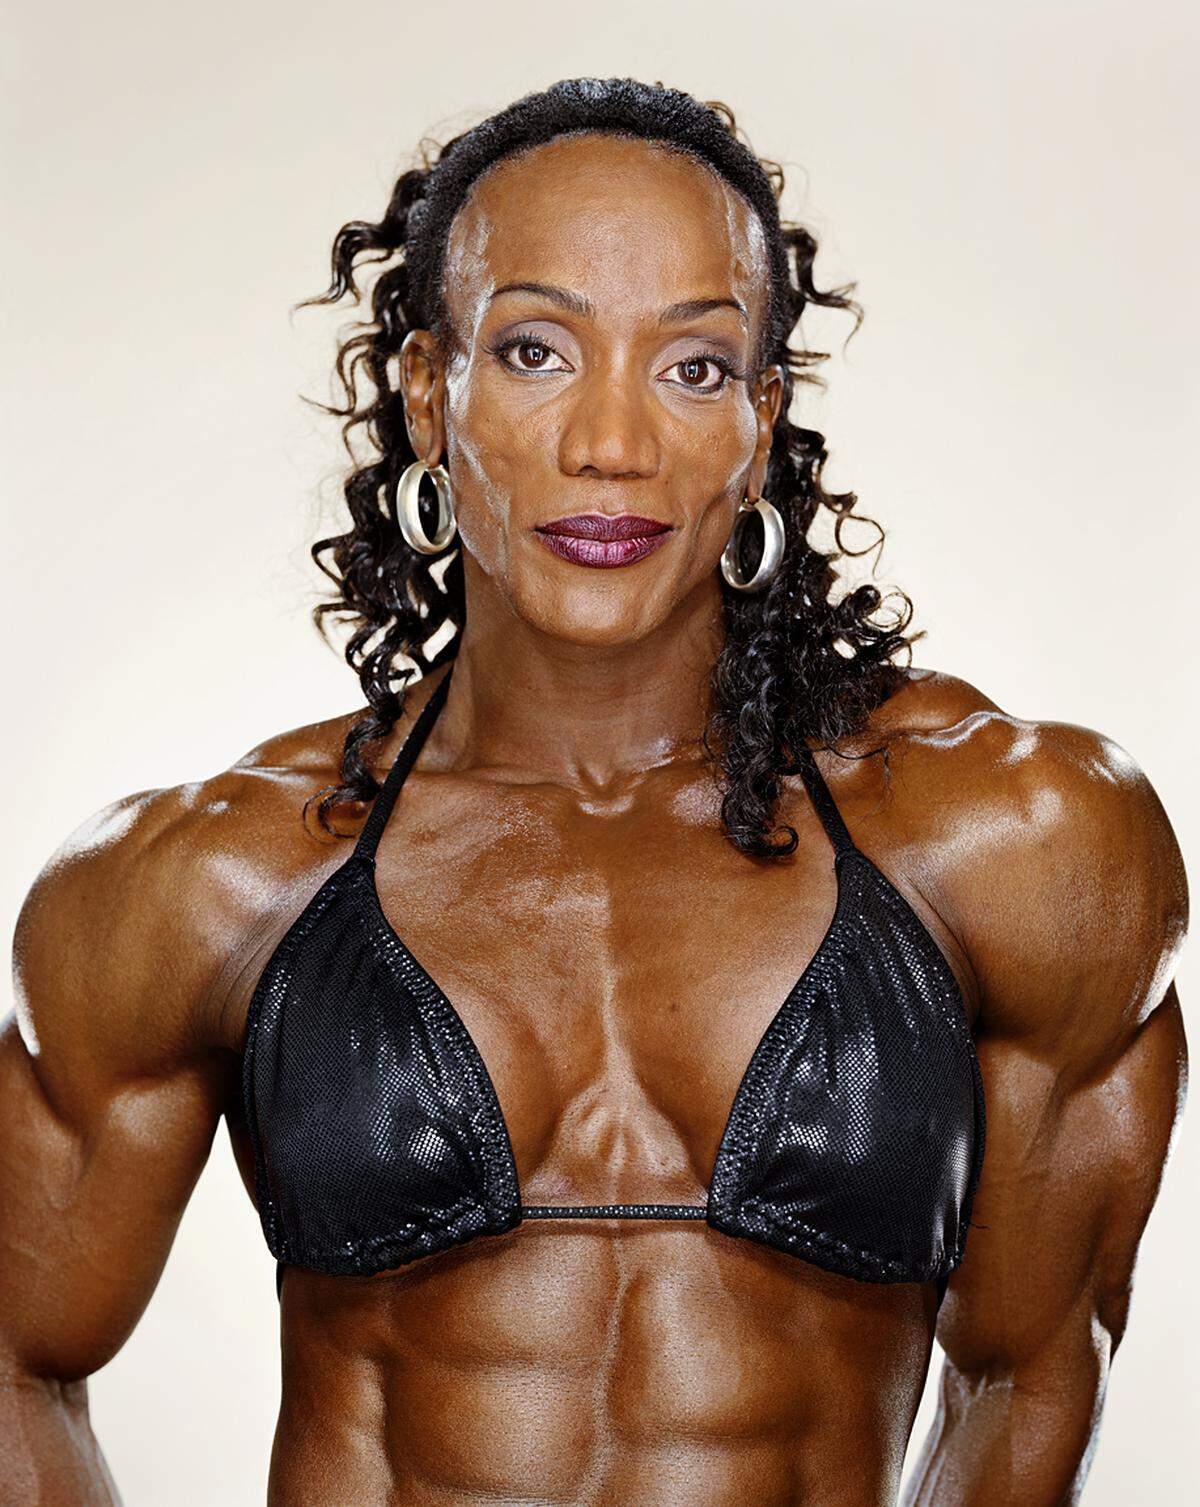 Vor ihrer Karriere als Bodybuilderin war Lenda Murray Cheerleaderin. Seit 2004 nimmt sie an keinen Wettbewerben mehr teil.